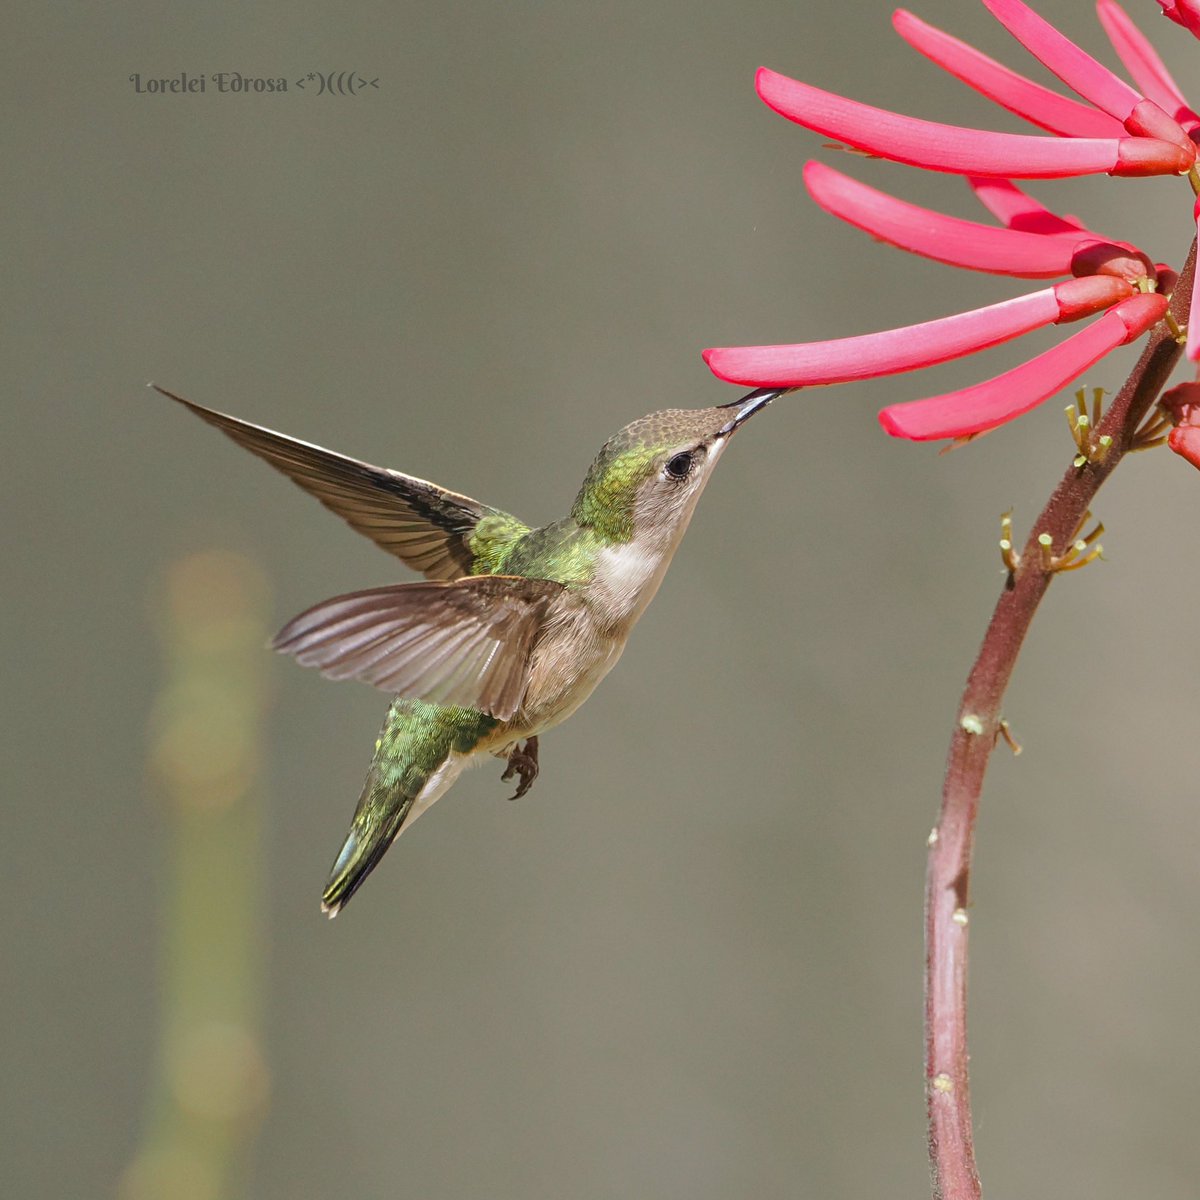 #birds #birdphotography #BirdsOfTwitter #NaturePhotography #hummingbird 
Ruby throated hummingbird
Fl., USA
Apr. 2024